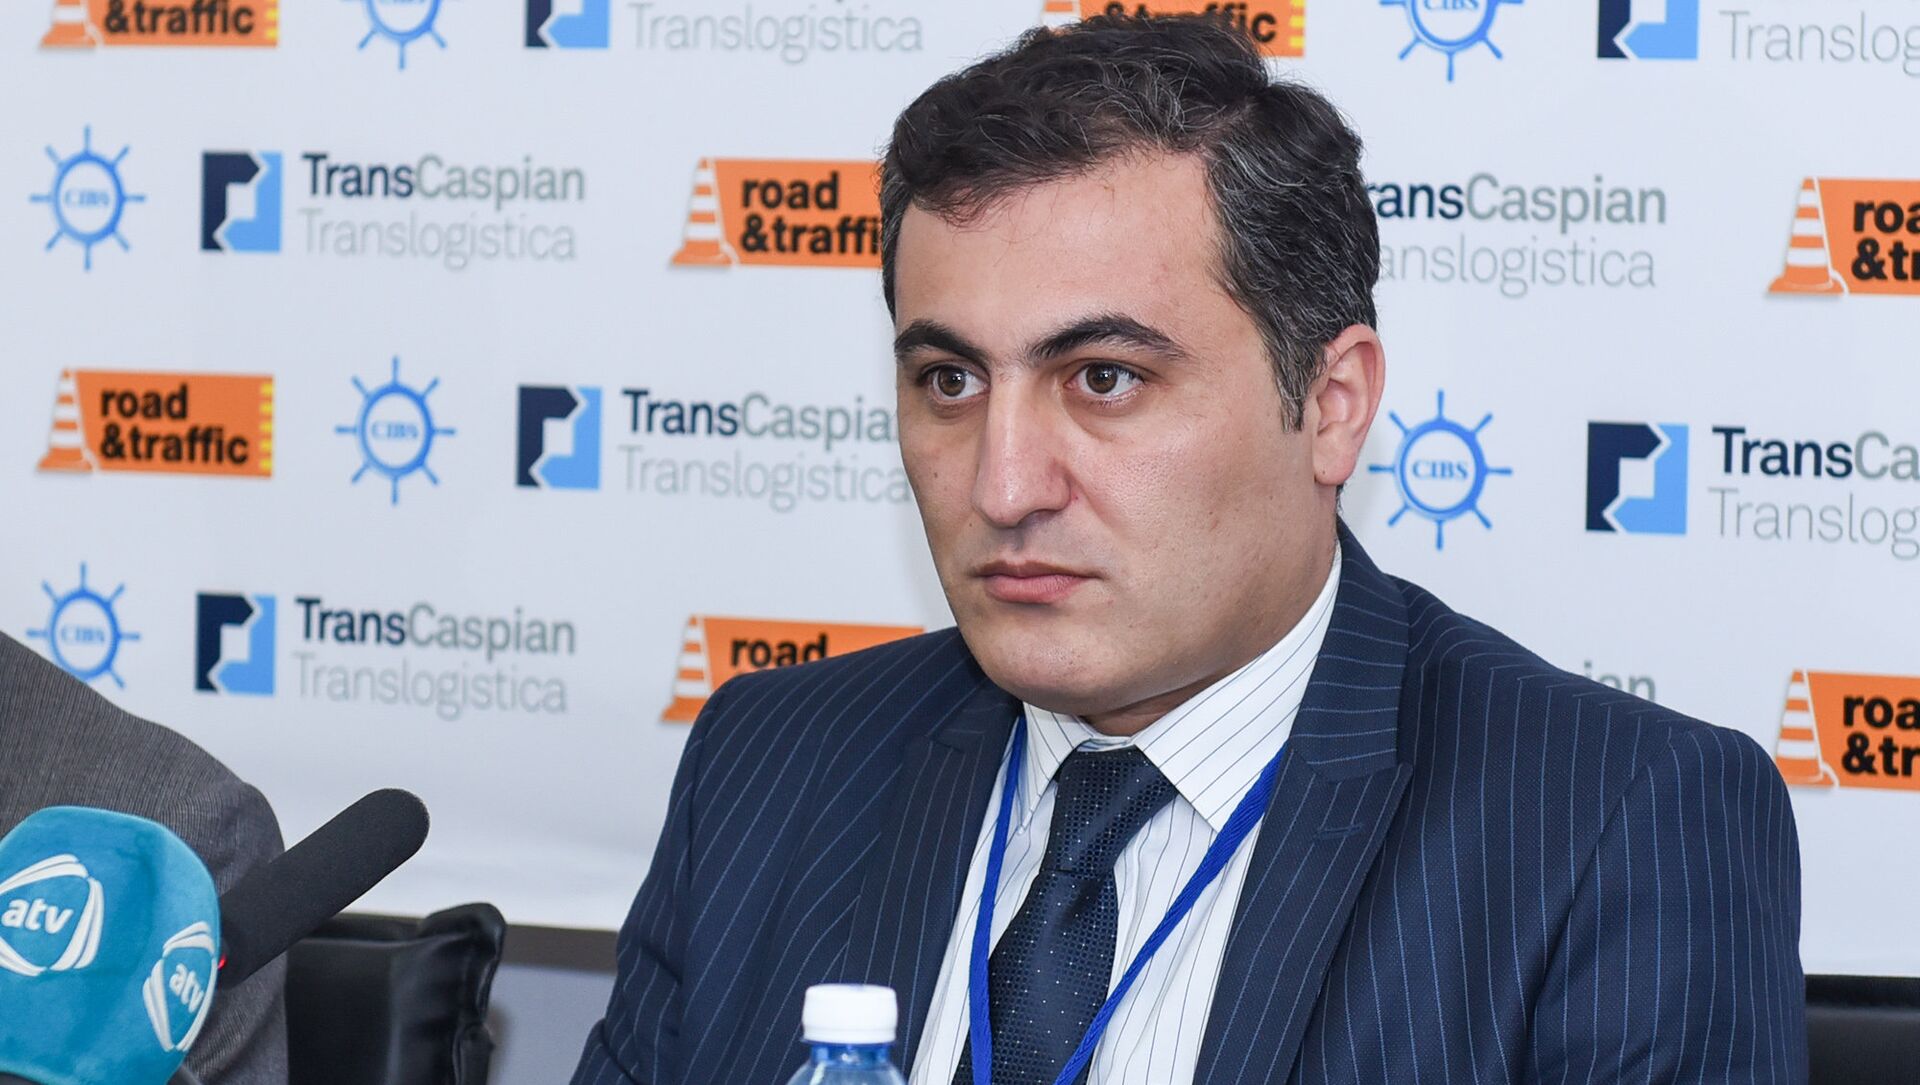 Пресс-секретарь Бакинского транспортного агентства Маис Агаев - Sputnik Азербайджан, 1920, 22.04.2021